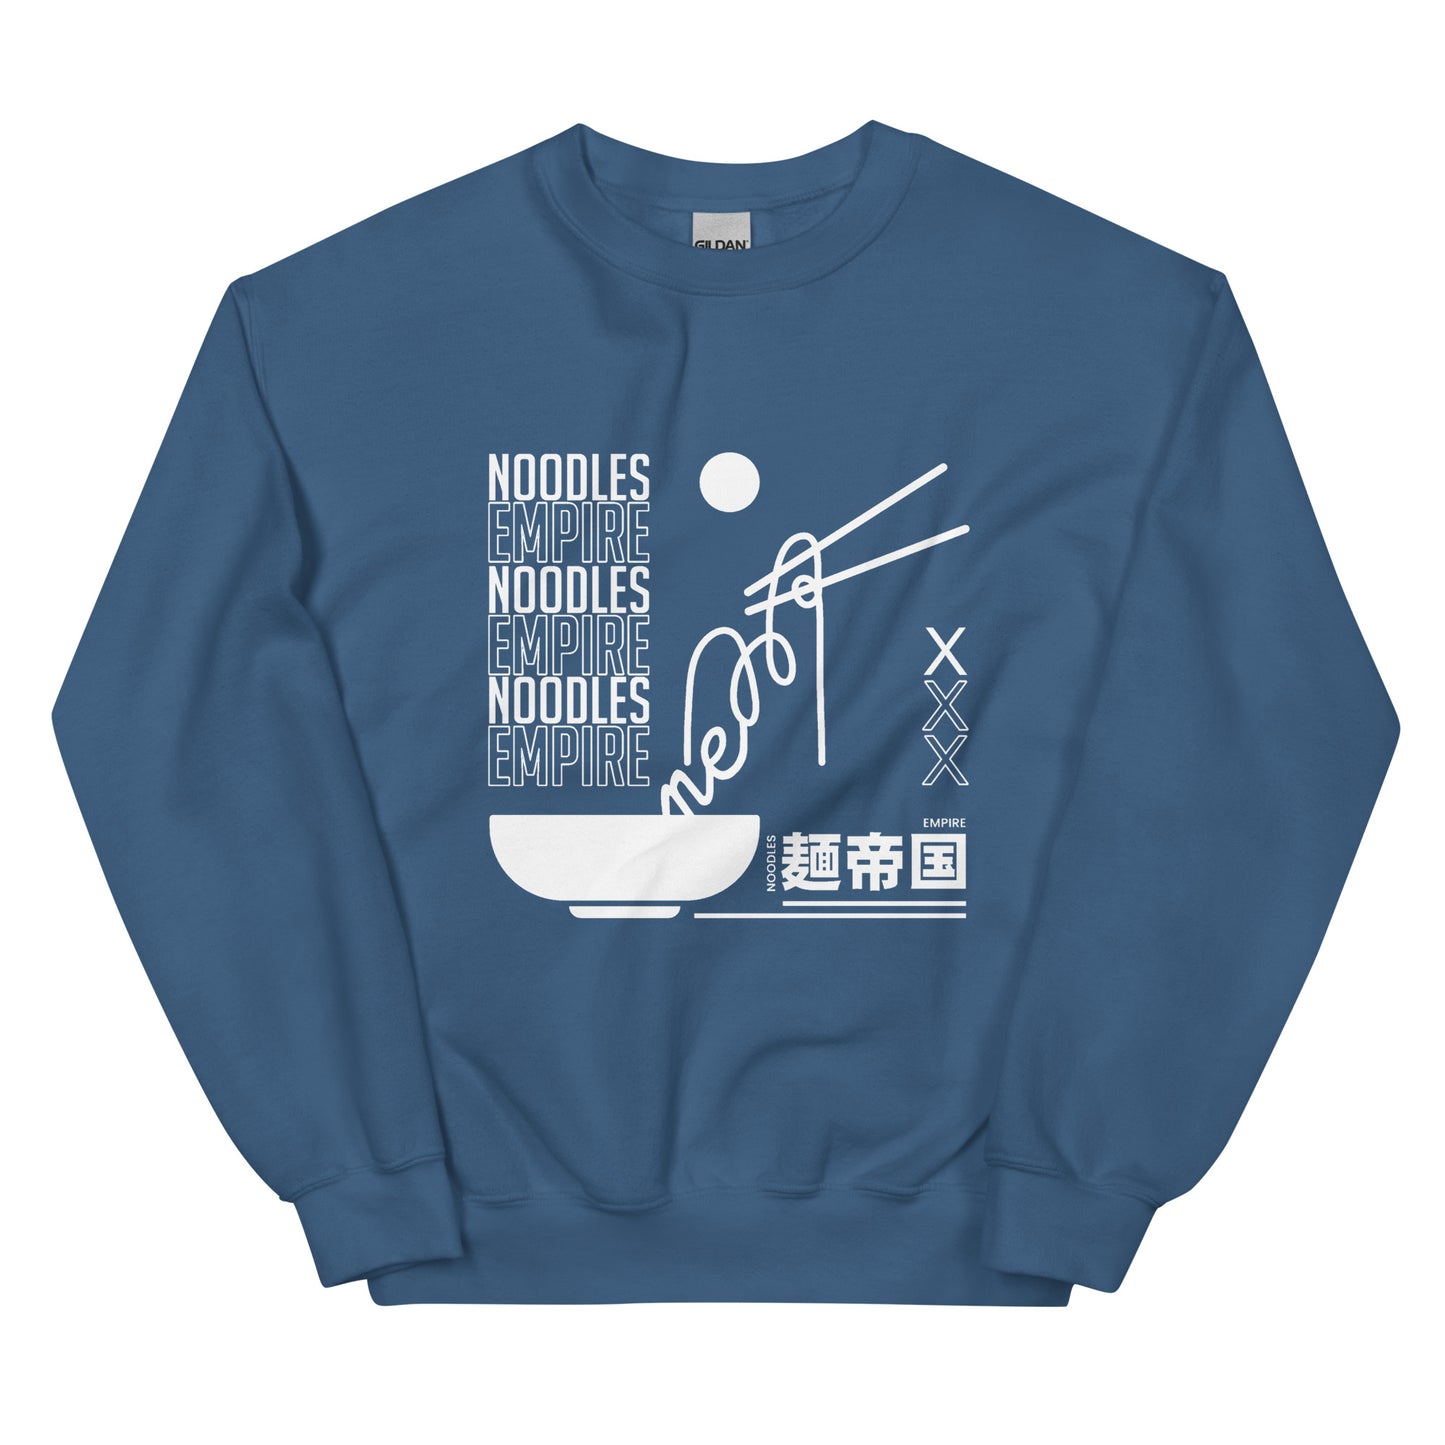 Noodle Empire Crewneck: Urban